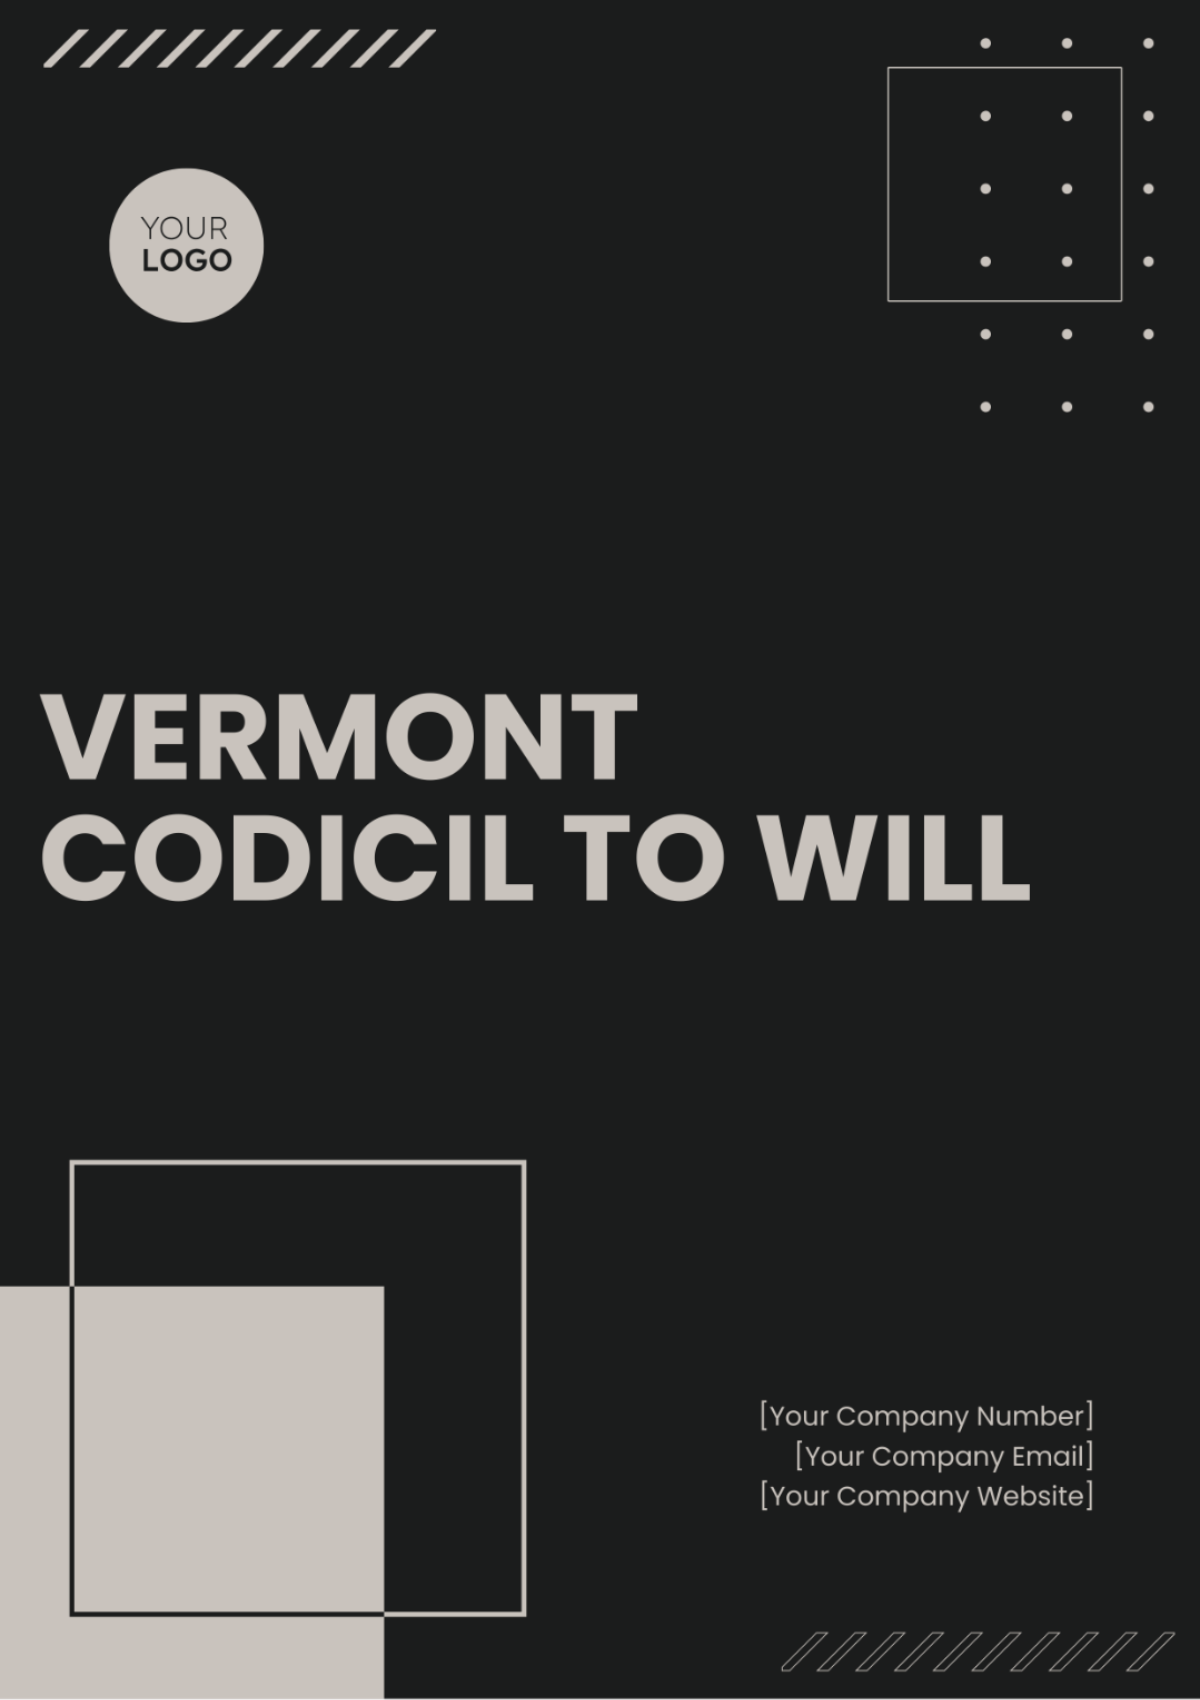 Vermont Codicil to Will Template